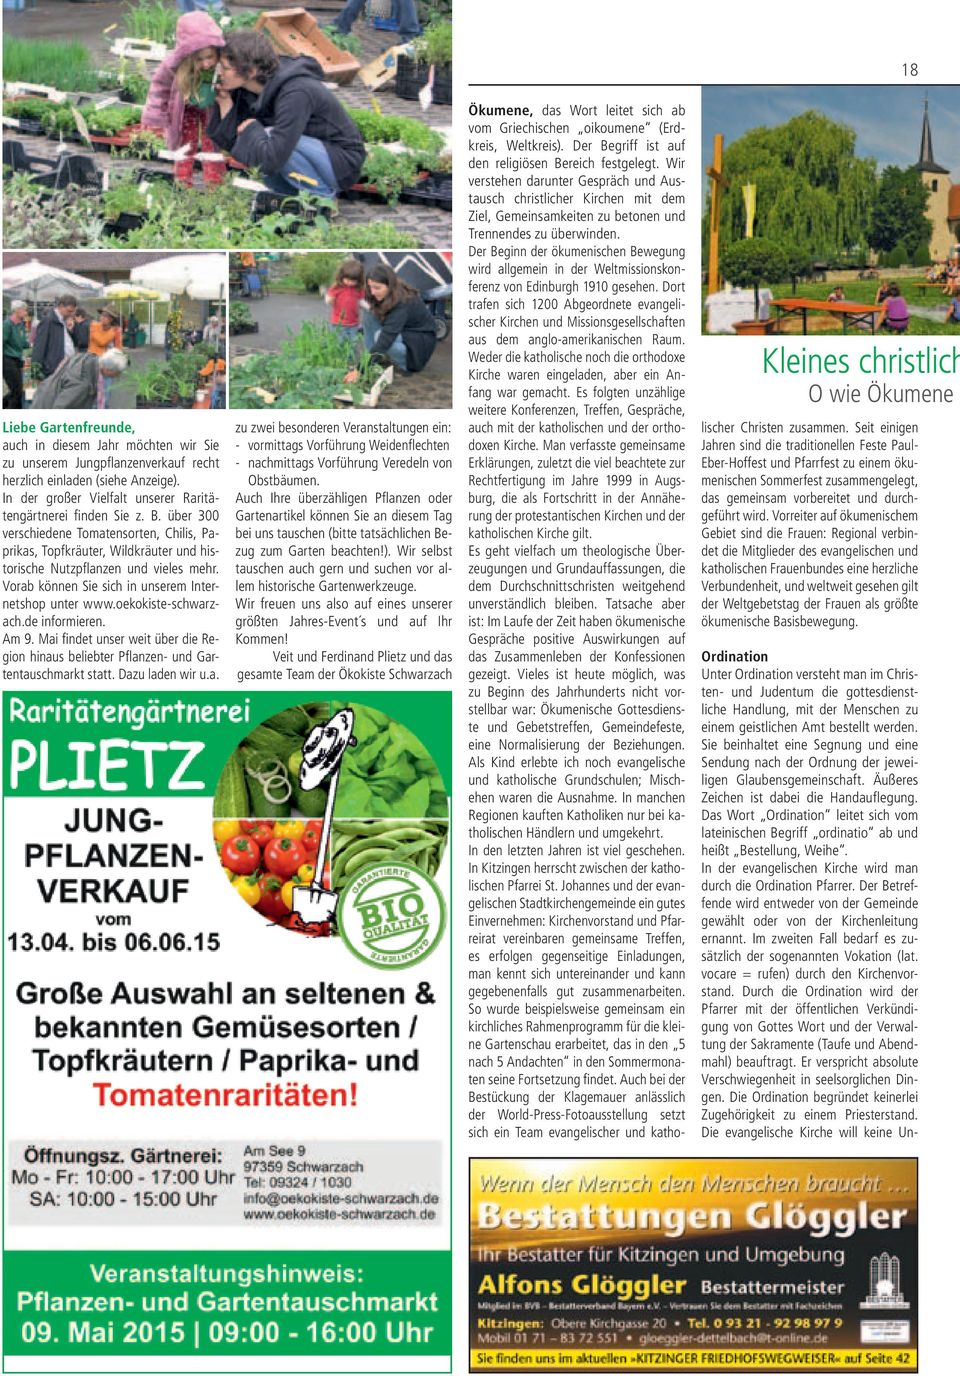 Vorab können Sie sich in unserem Internetshop unter www.oekokiste-schwarzach.de informieren. Am 9. Mai findet unser weit über die Region hinaus beliebter Pflanzen- und Gartentauschmarkt statt.